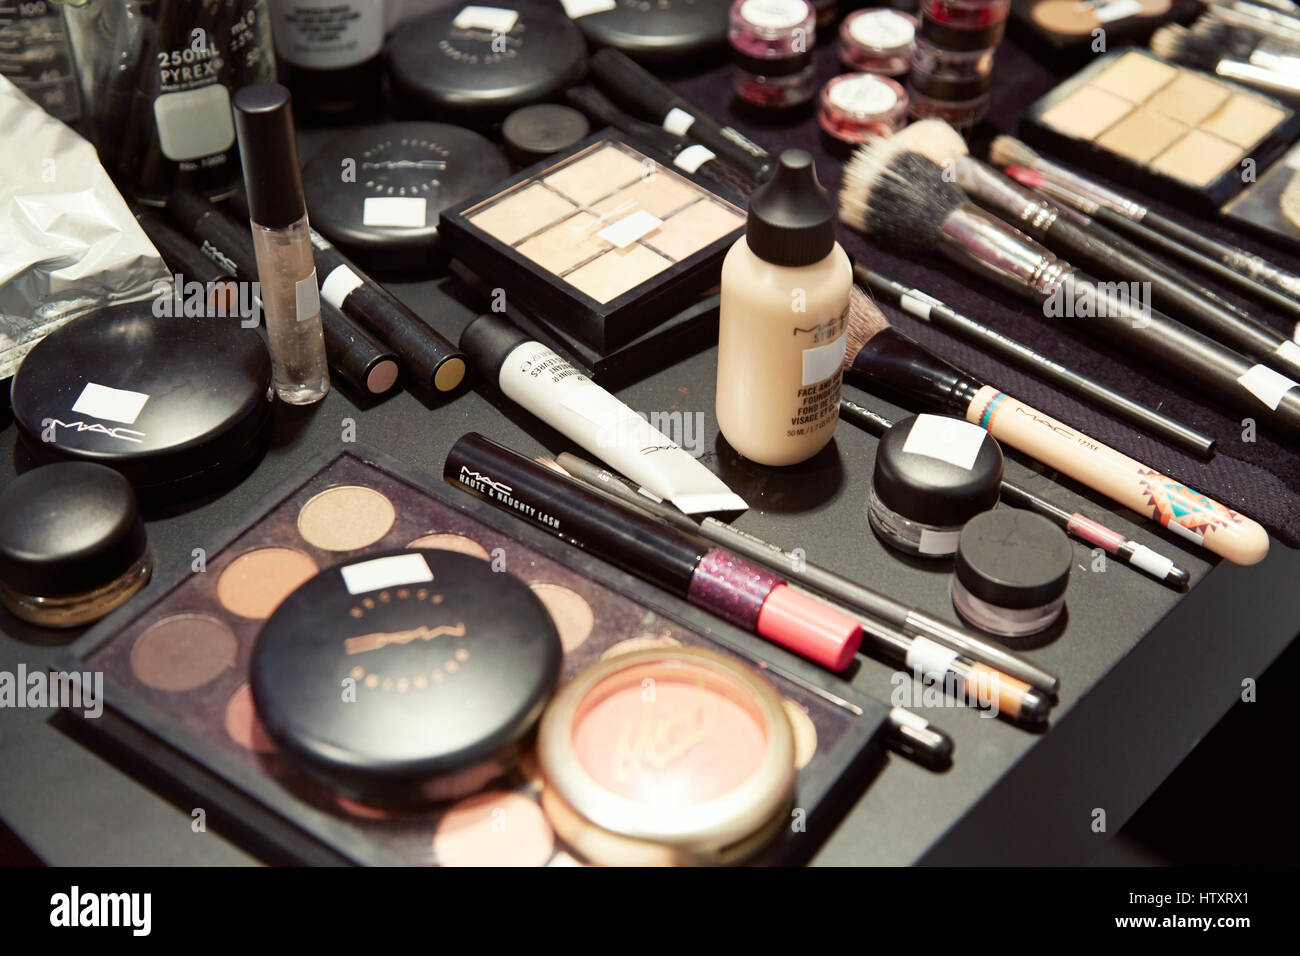 Mac cosmetics commanditaire au Milan Fashion week : un assortiment de  produits pour les yeux et visage noir sur la table de maquillage et  président Photo Stock - Alamy